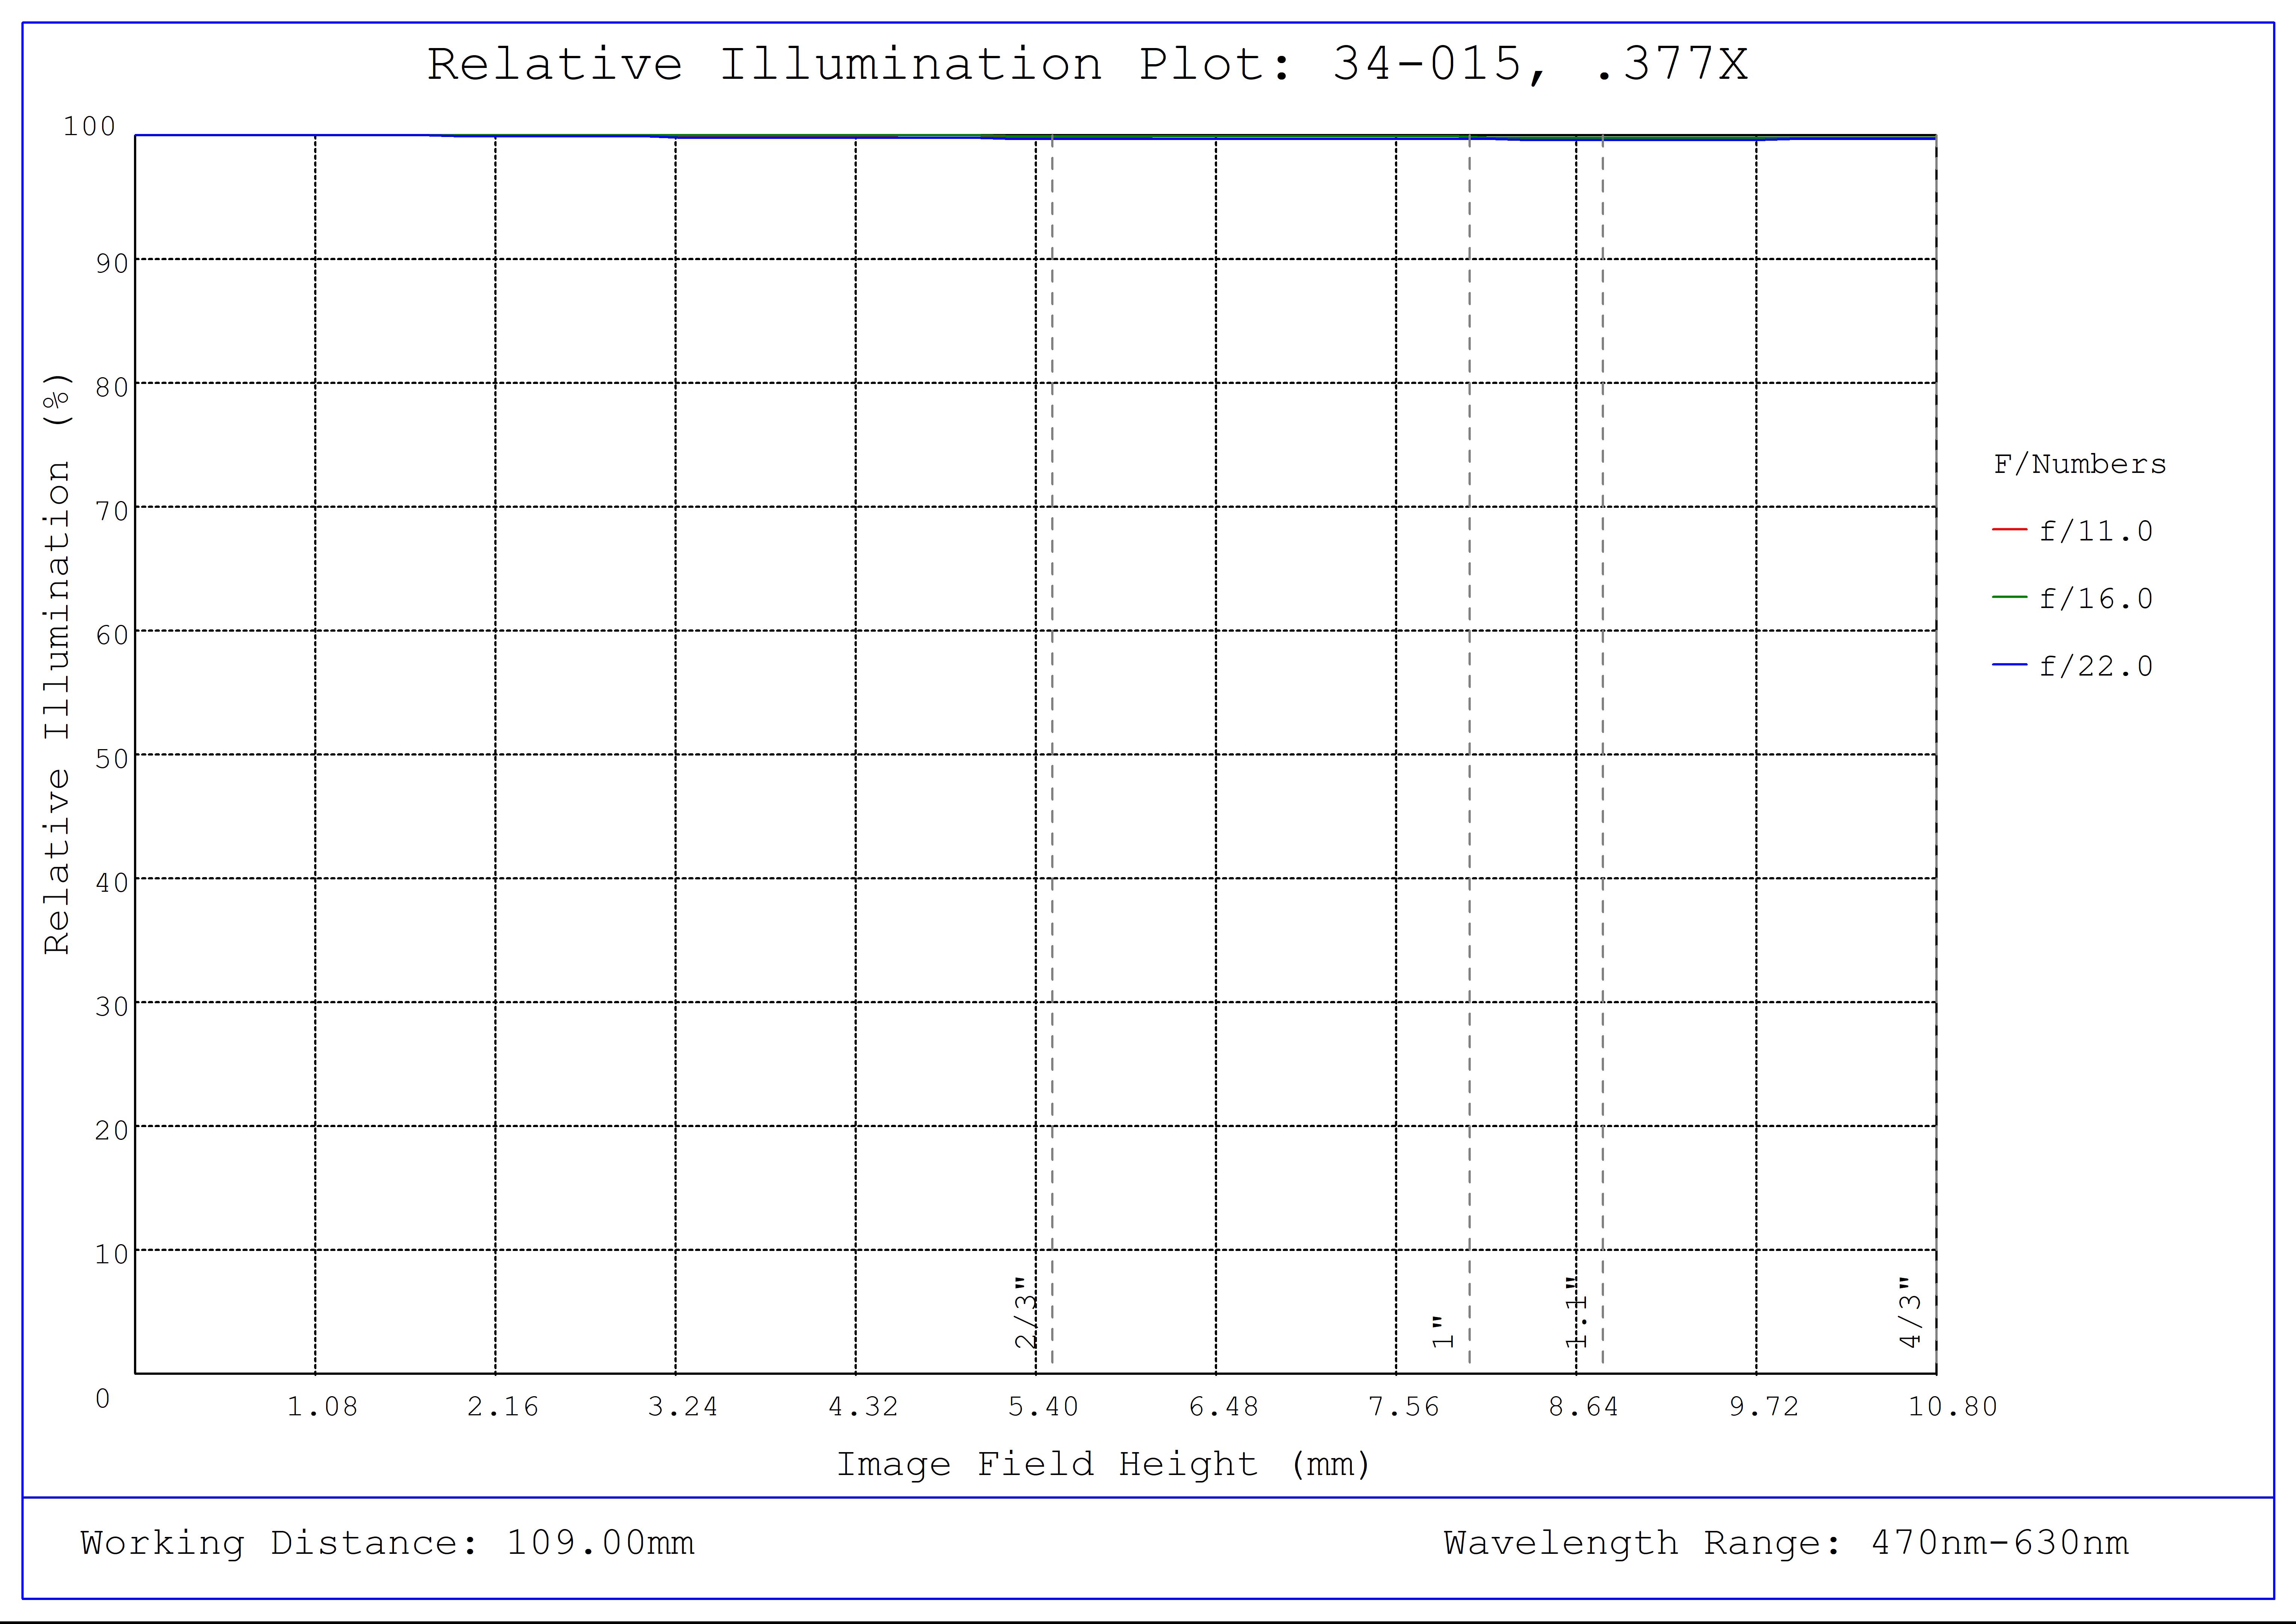 #34-015, 0.377X, 4/3" C-Mount TitanTL® Telecentric Lens, Relative Illumination Plot